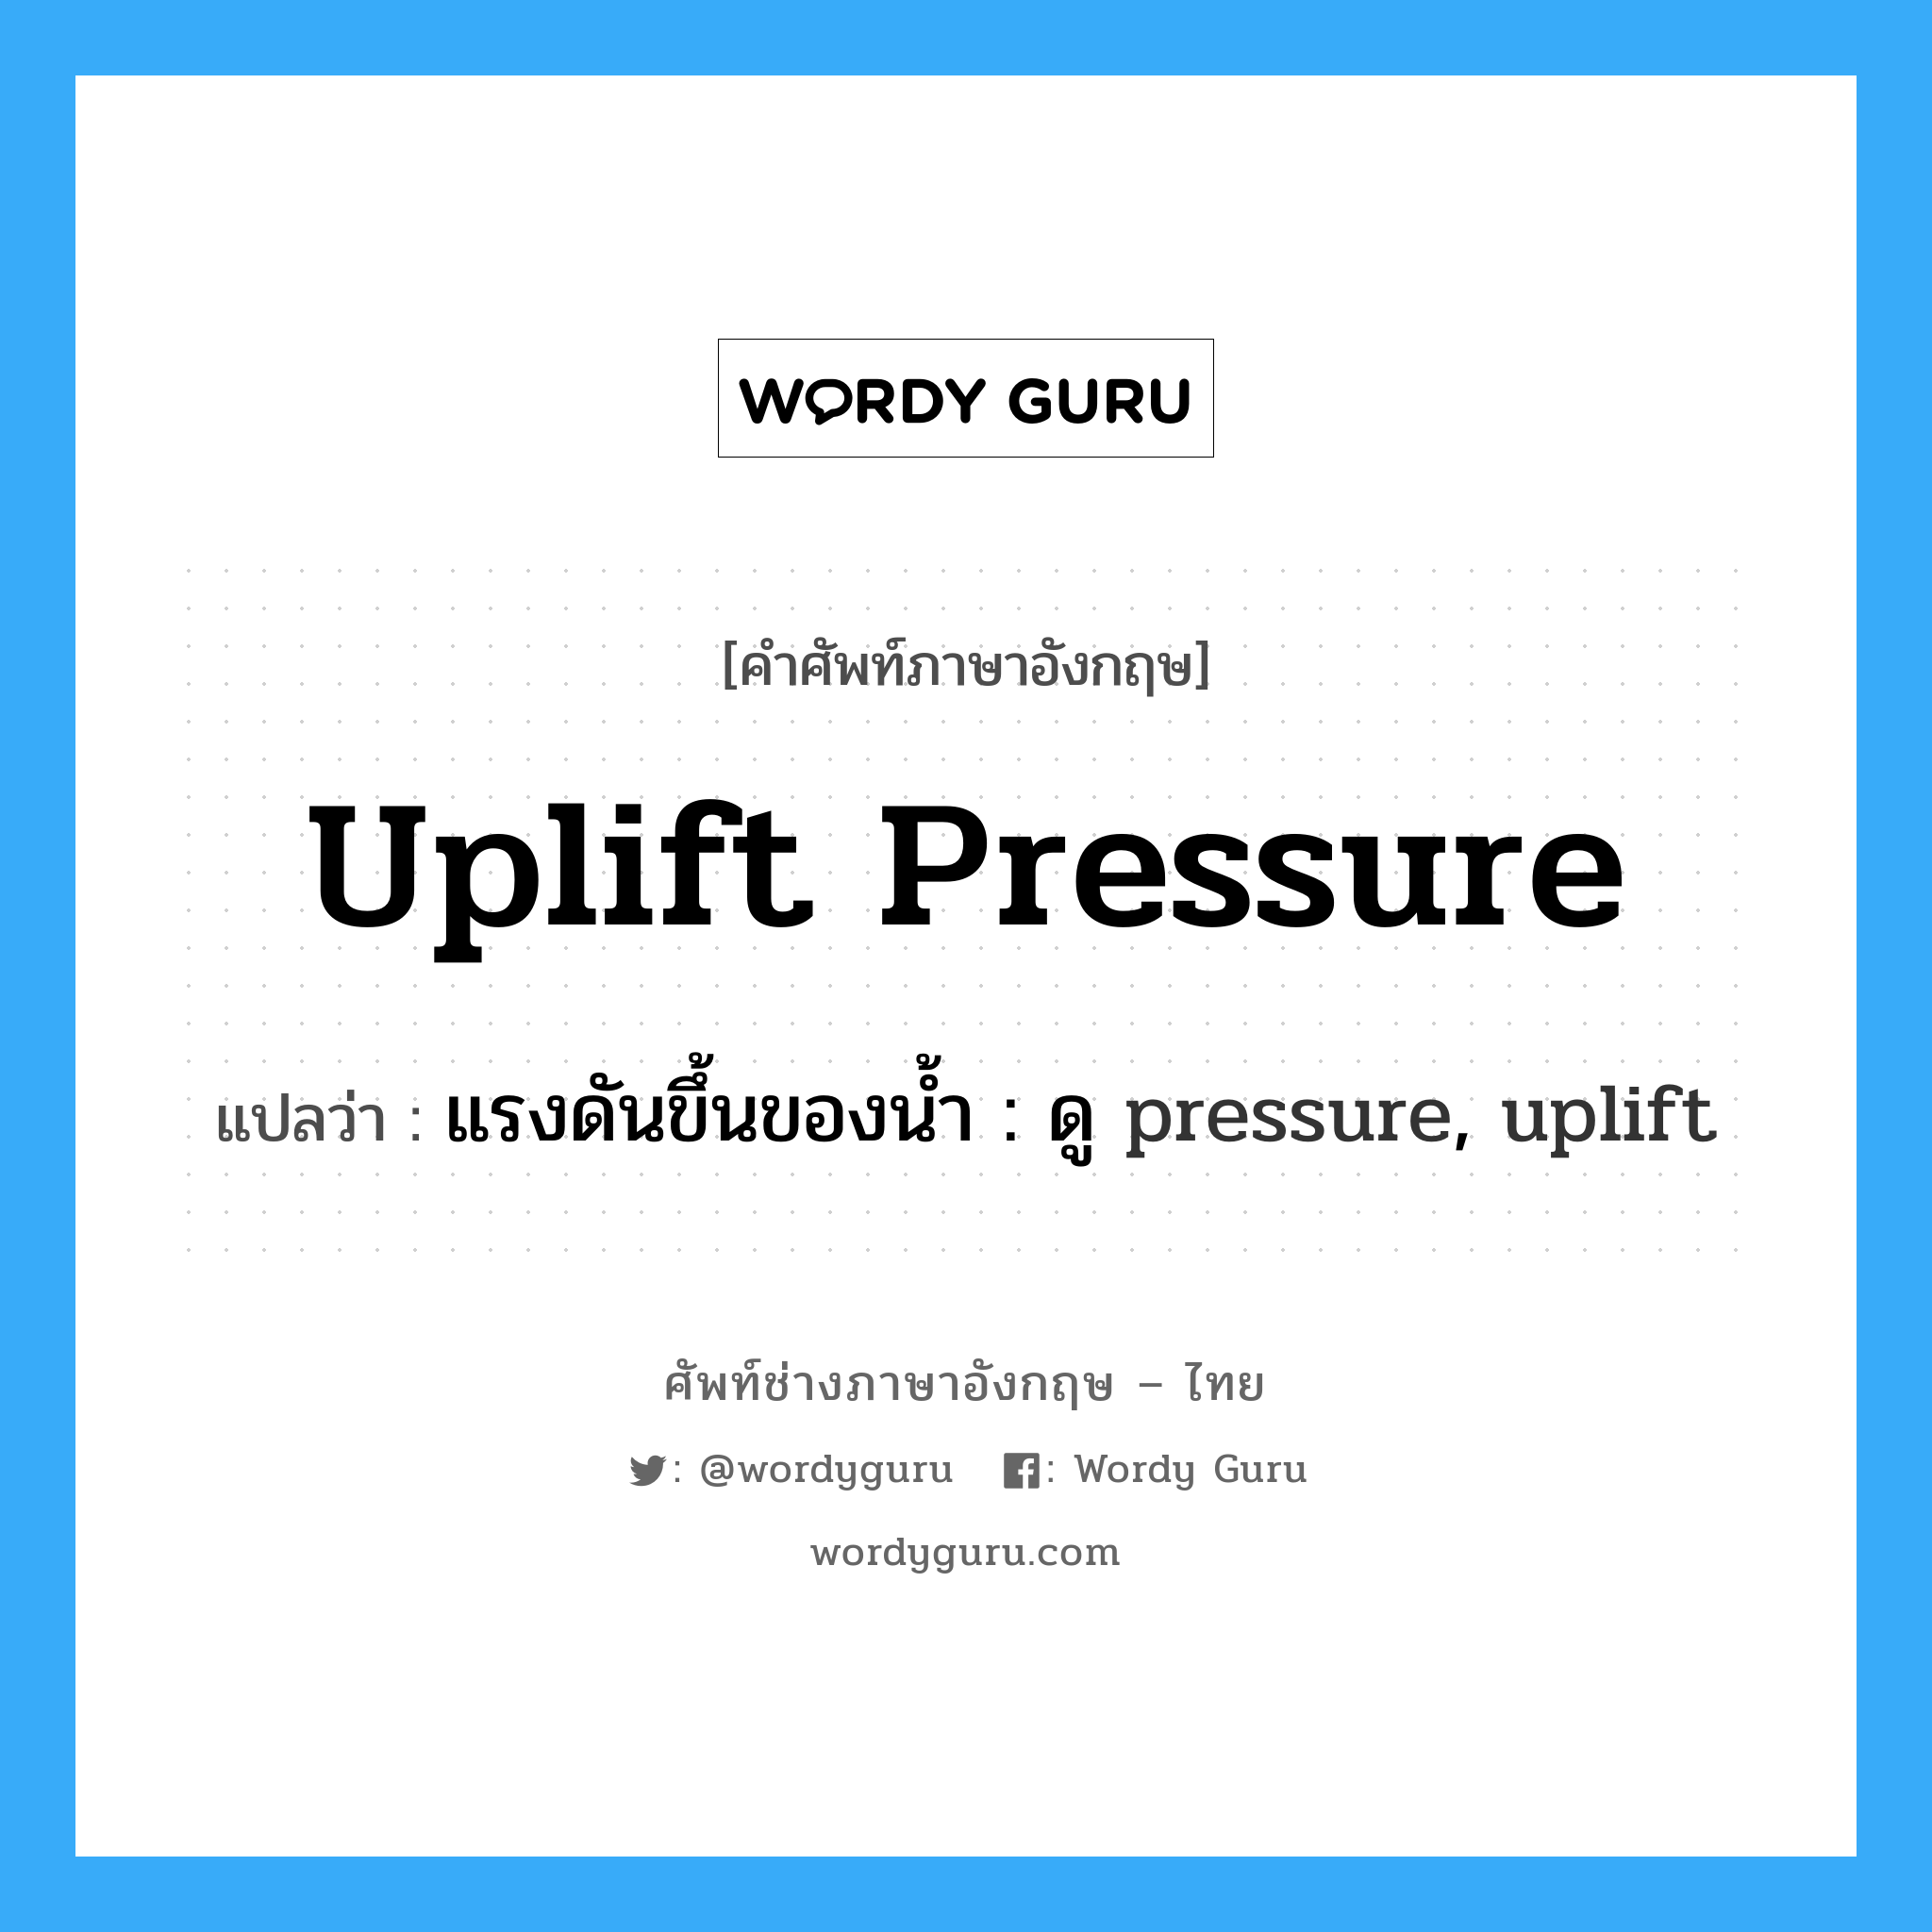 แรงดันขึ้นของน้ำ : ดู pressure, uplift ภาษาอังกฤษ?, คำศัพท์ช่างภาษาอังกฤษ - ไทย แรงดันขึ้นของน้ำ : ดู pressure, uplift คำศัพท์ภาษาอังกฤษ แรงดันขึ้นของน้ำ : ดู pressure, uplift แปลว่า uplift pressure